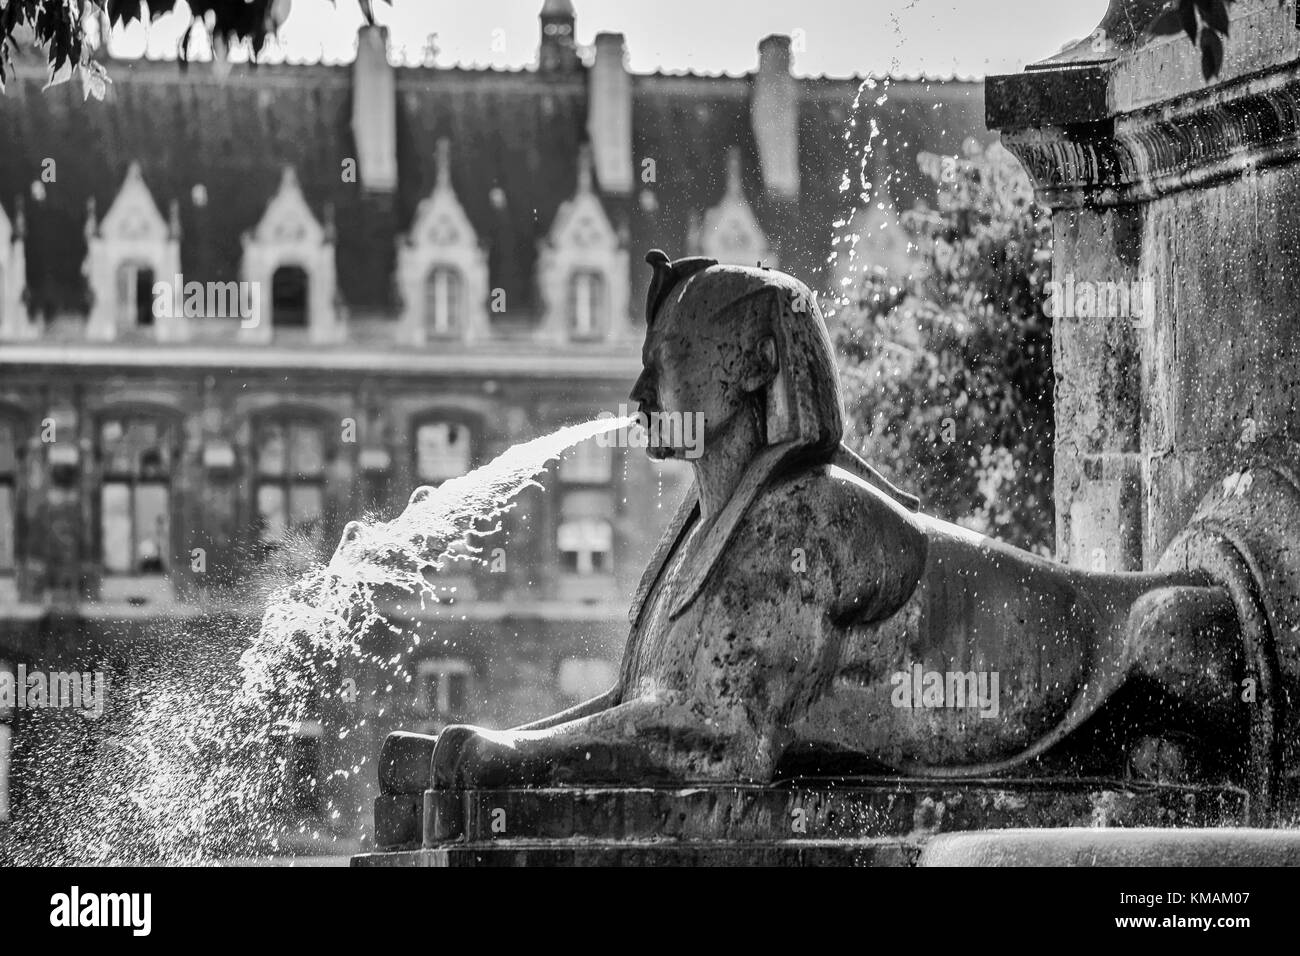 Springbrunnen in Paris mit sfinx herauszuspritzen Wasser in Schwarz und Weiß Stockfoto